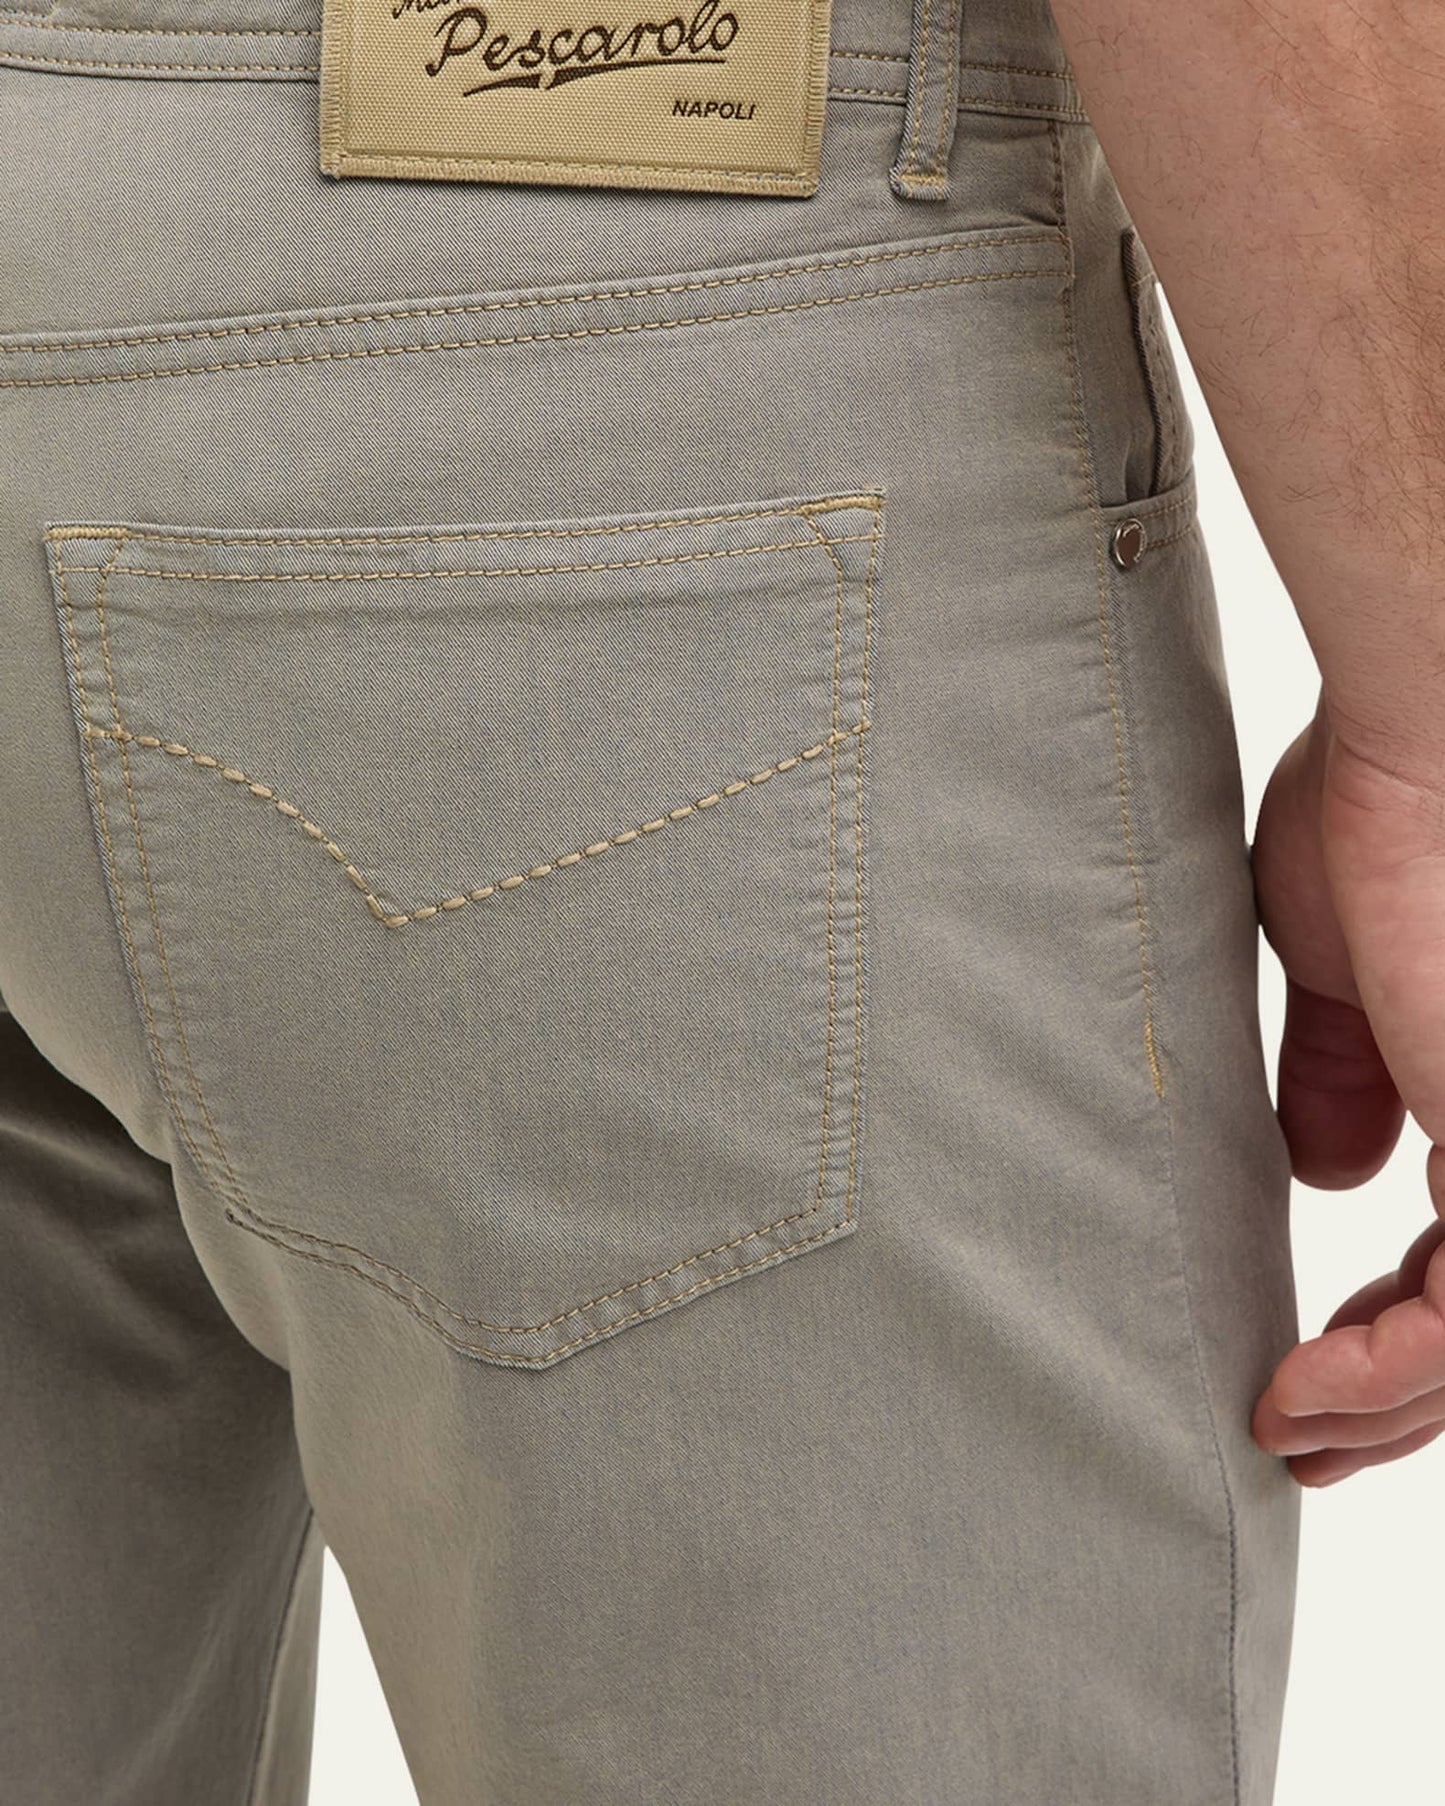 Pescarolo Nerano 5 Pocket Pant